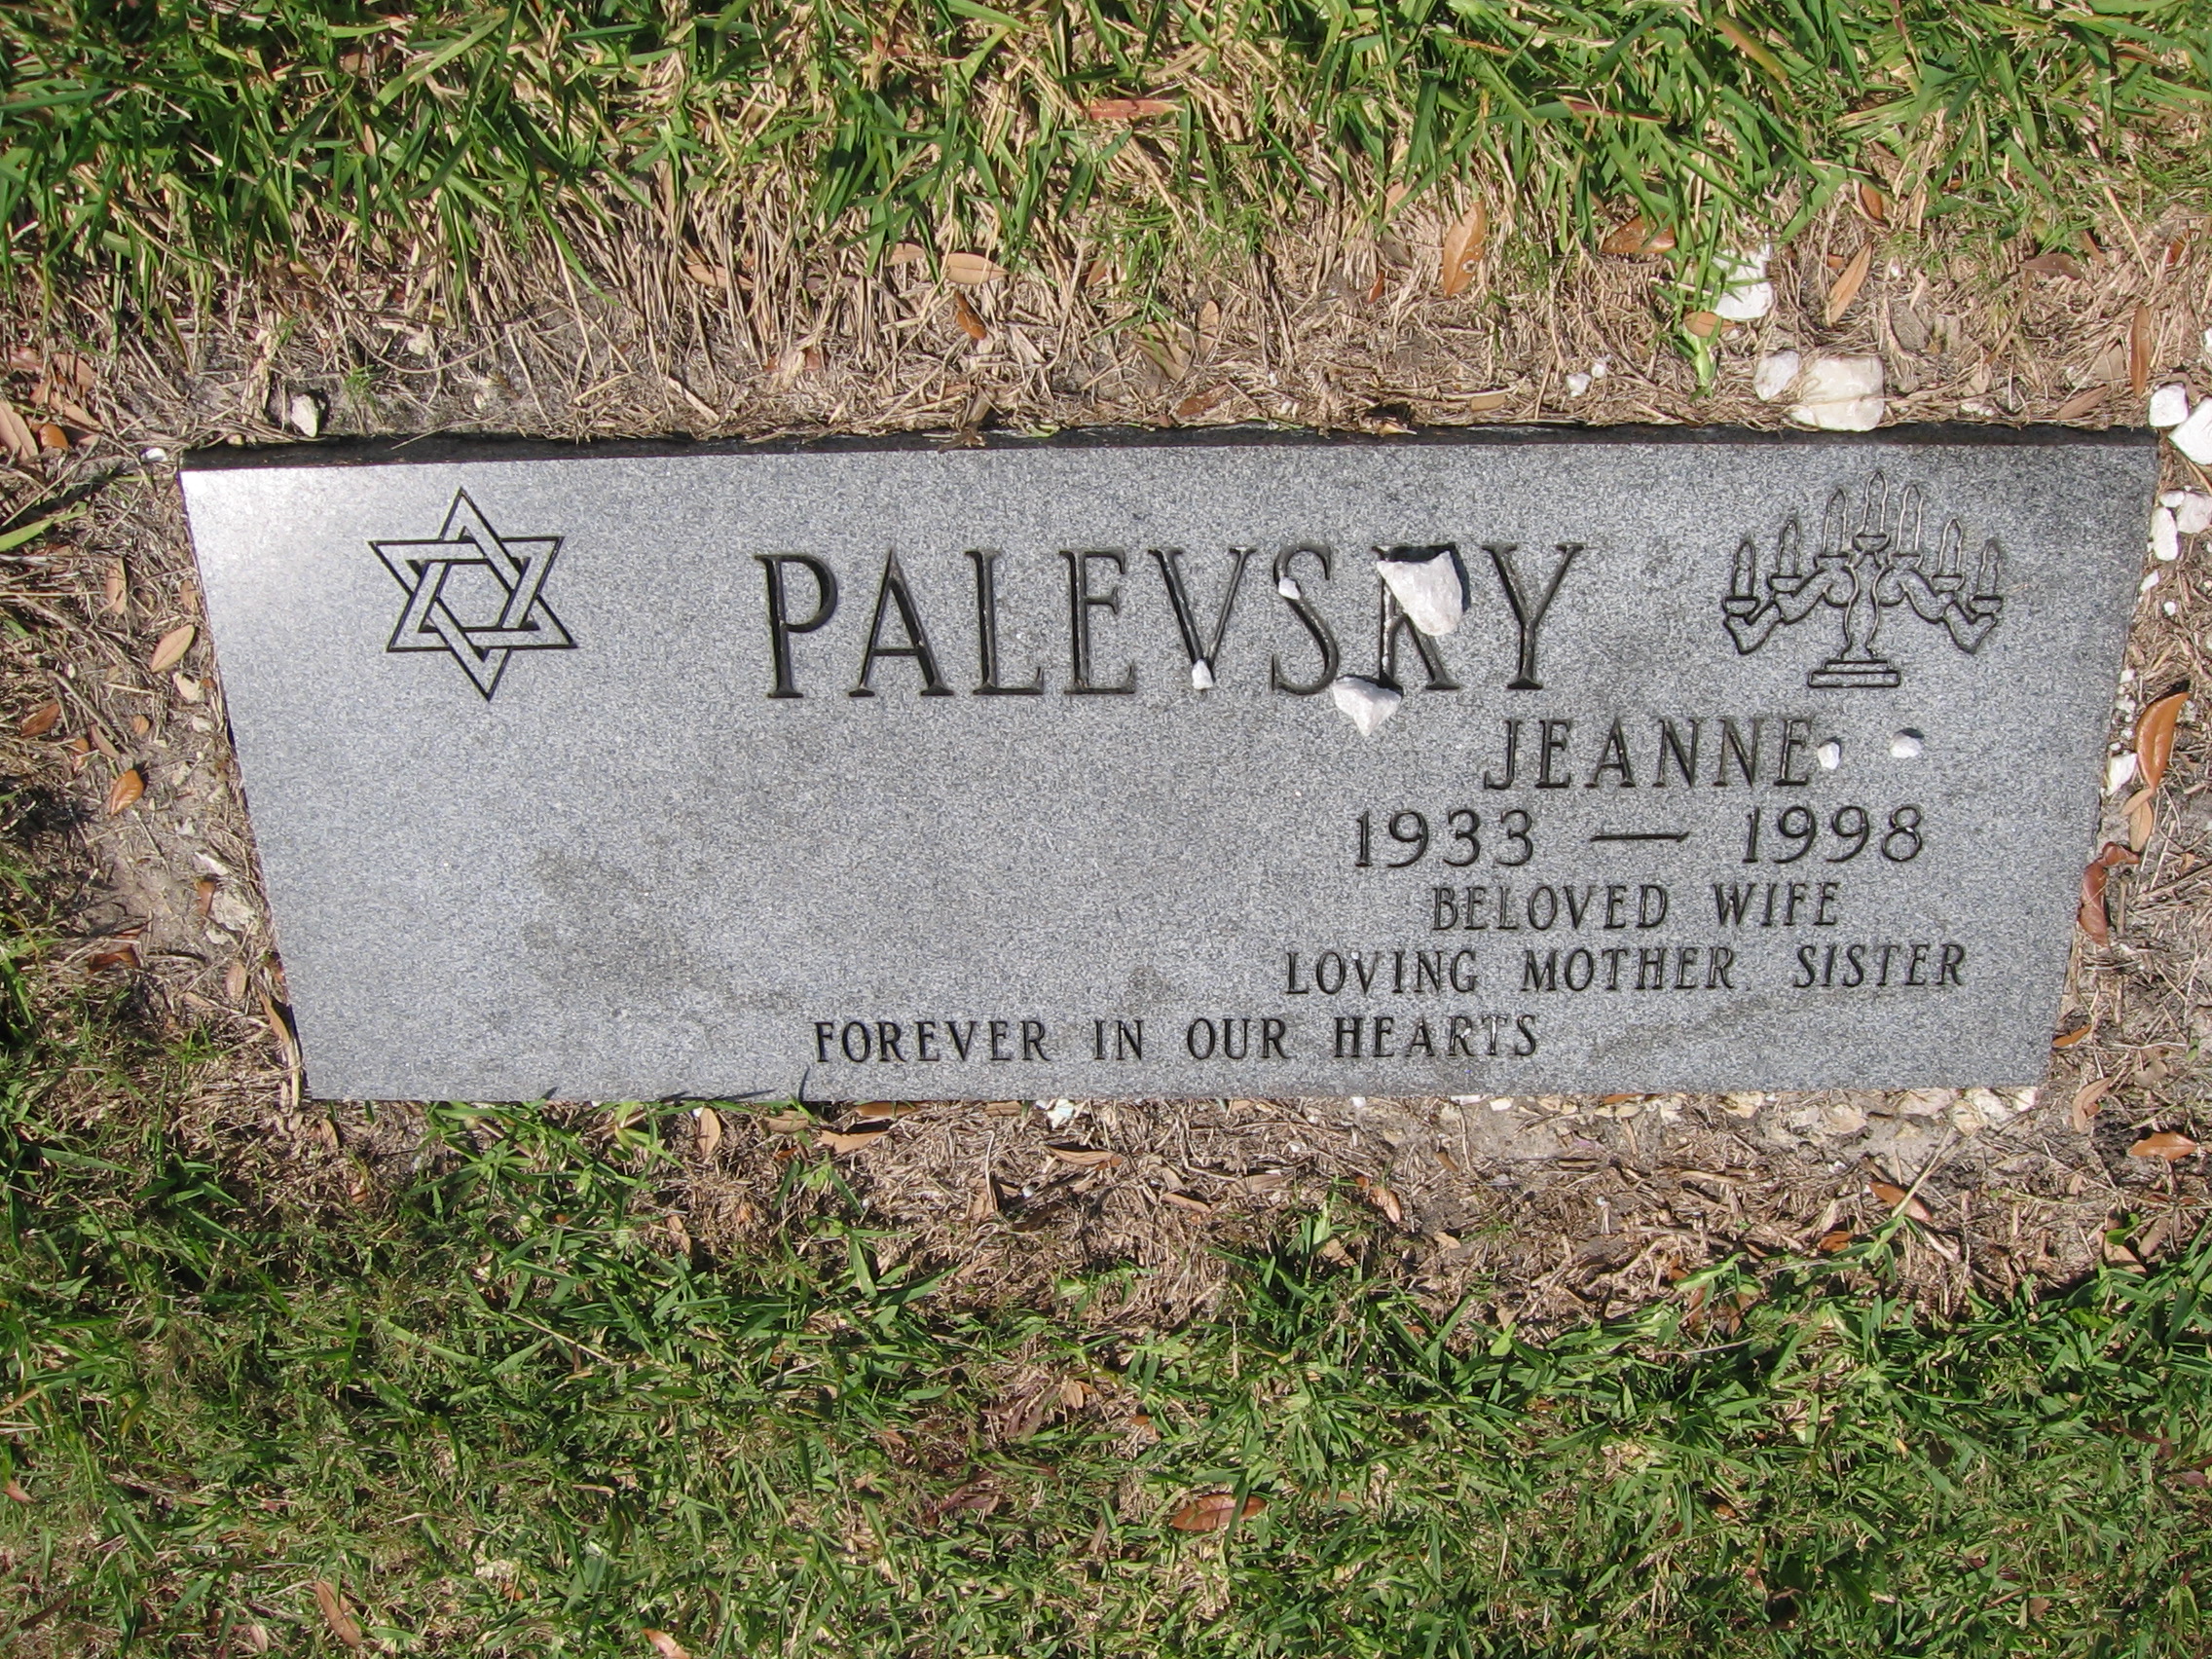 Jeanne Palevsky